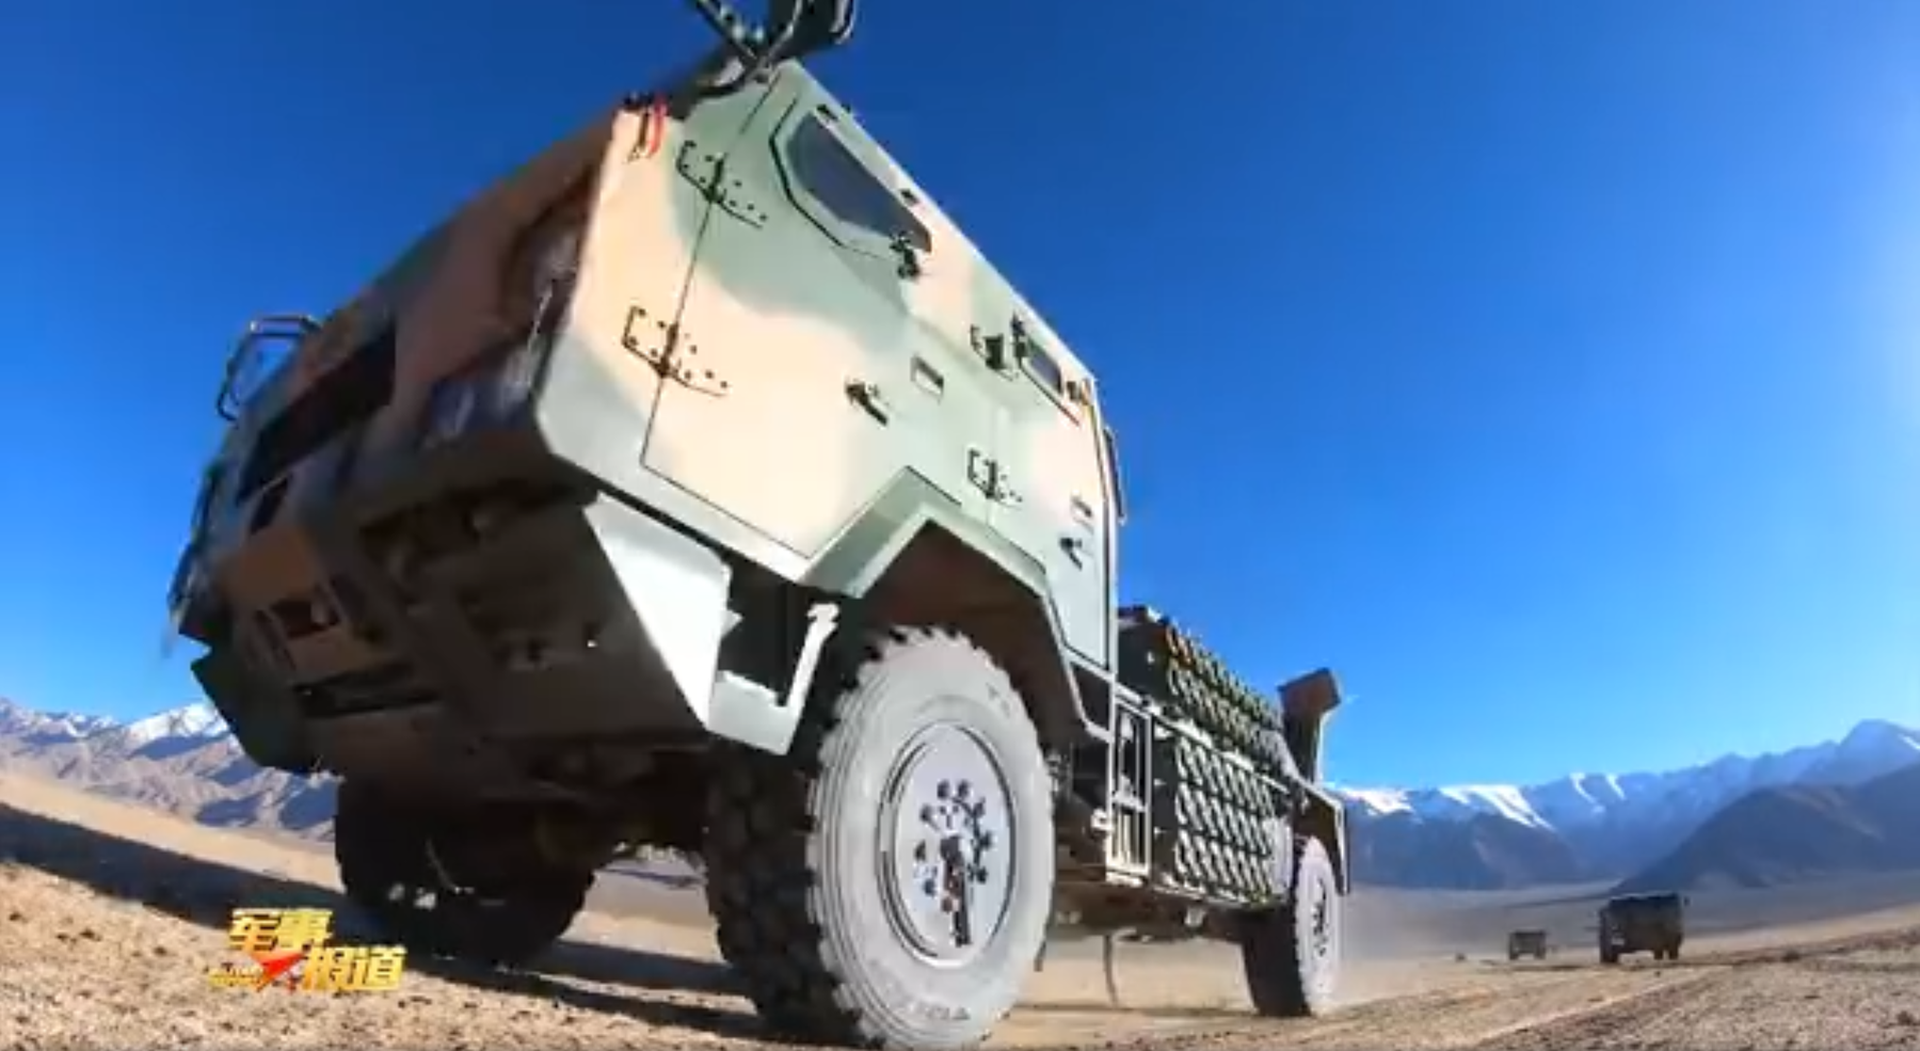 新疆军区新型车载榴弹炮近距离画面。（中国央视《军事报道》节目视频截图）